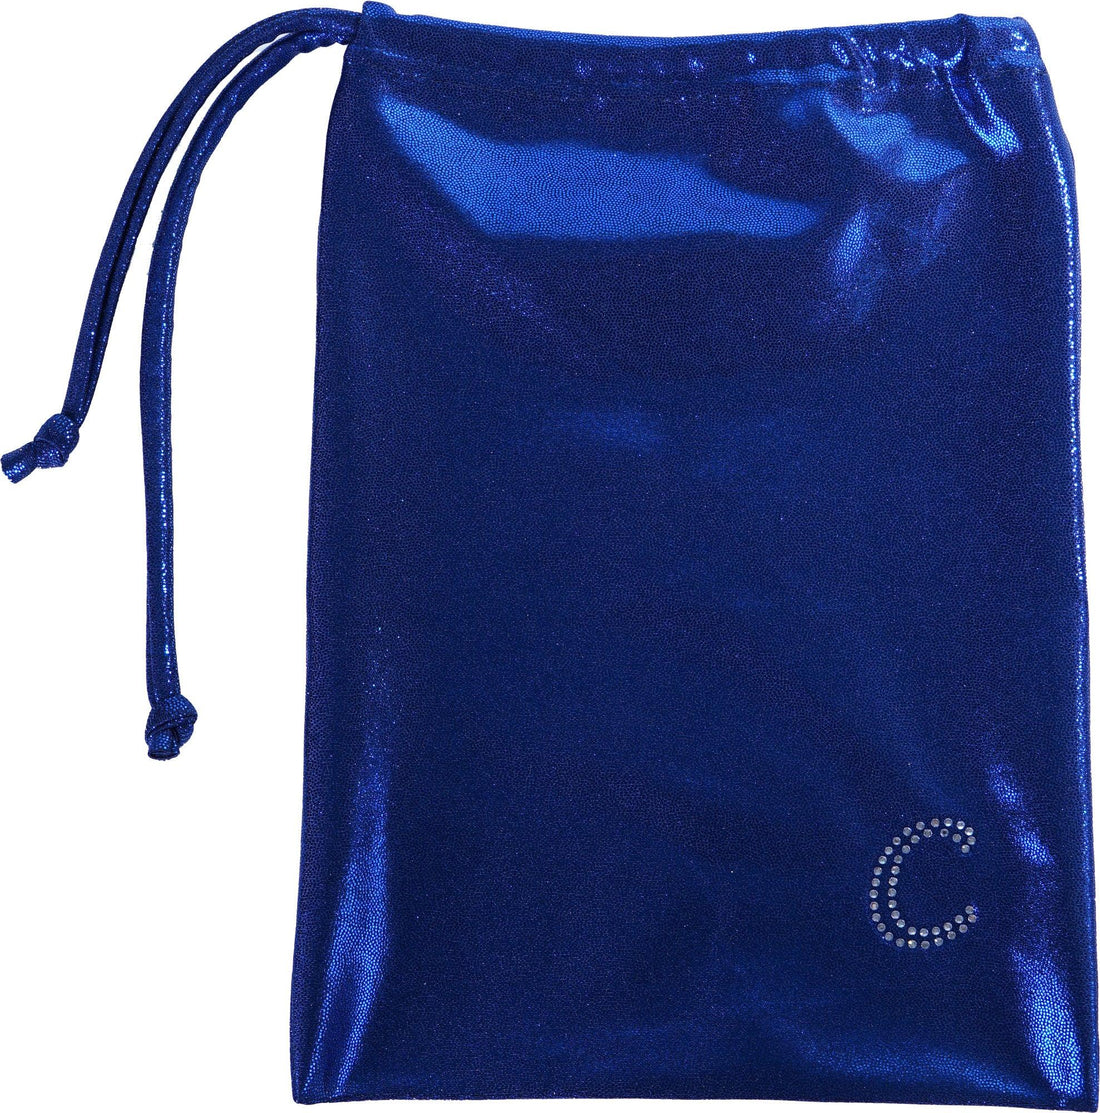 Bolsa calleras azul oscuro de CEK C-7002